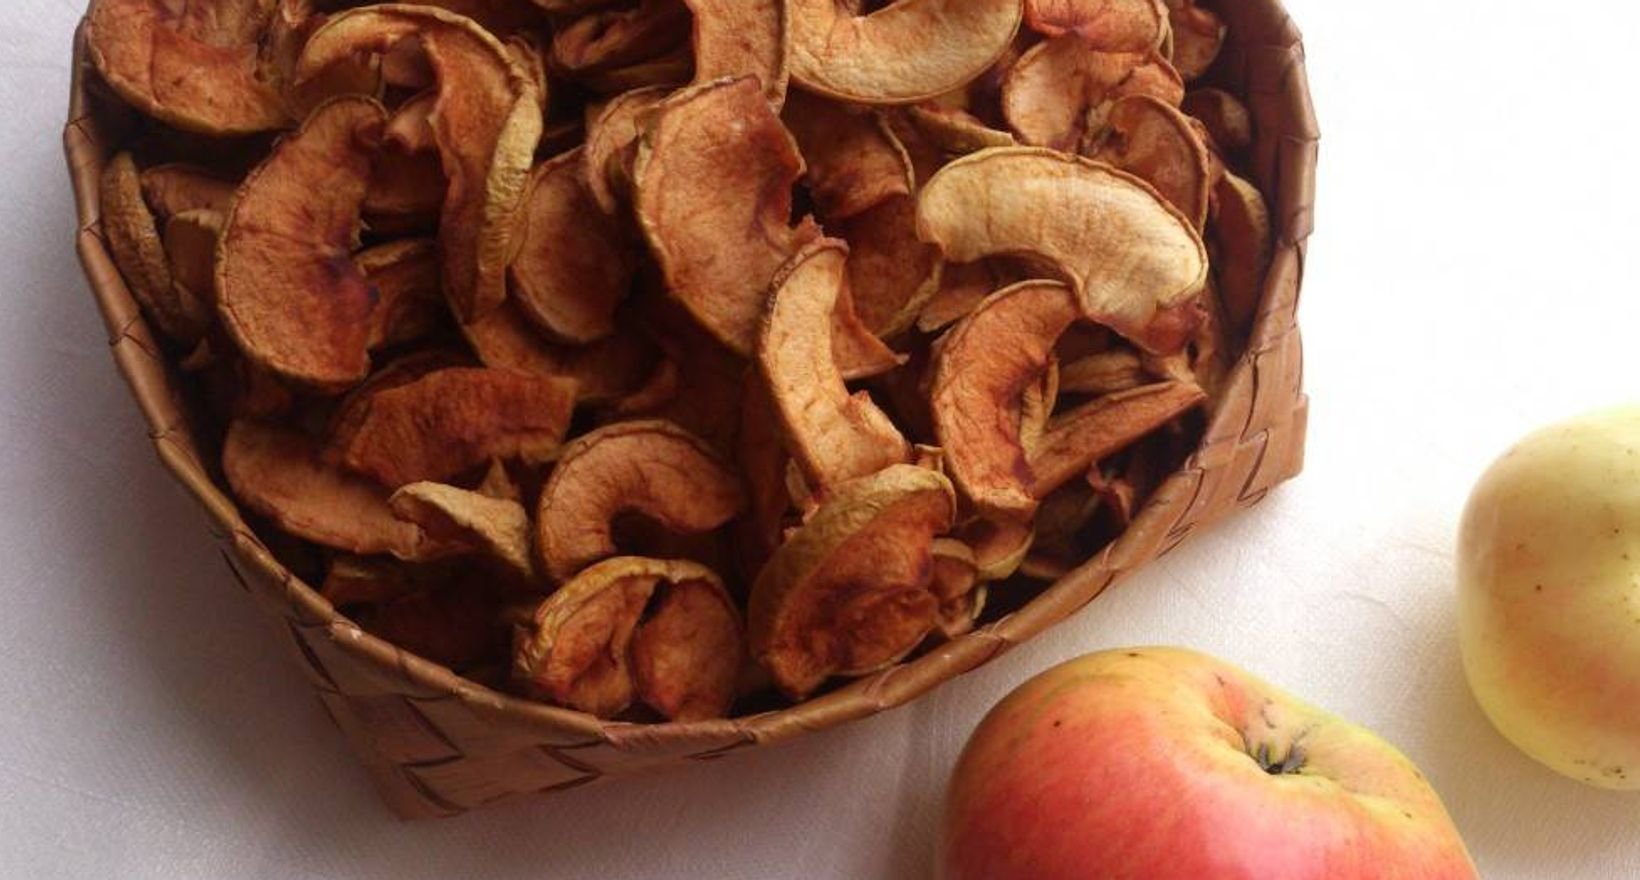 Как хранить сушеные яблоки дома